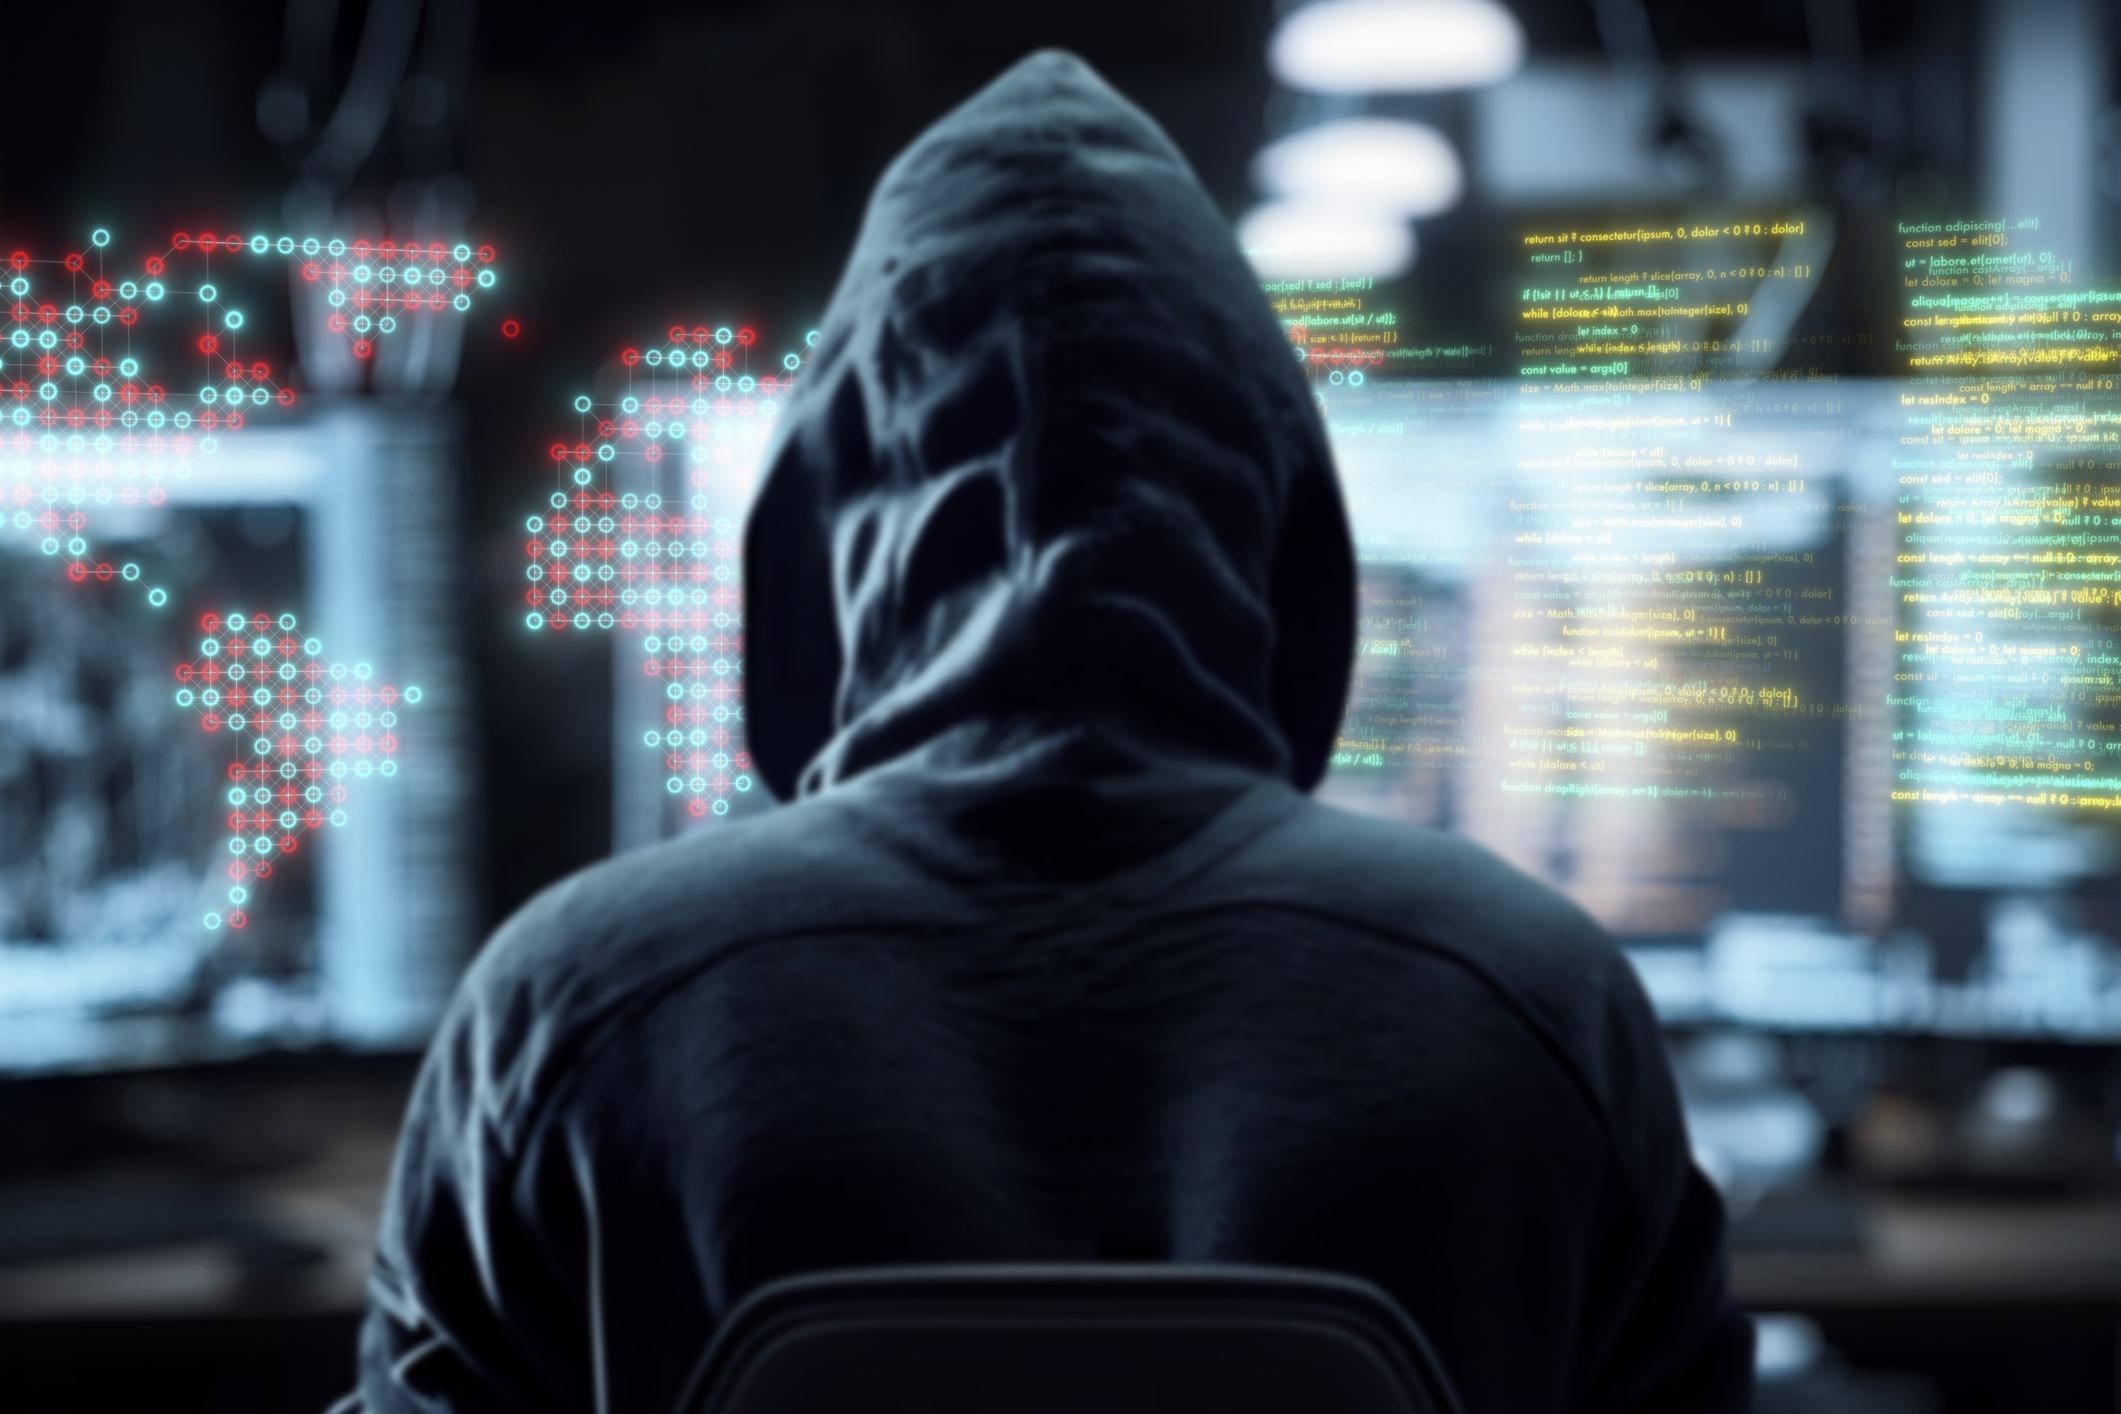 Υπουργείο Ψηφιακής Διακυβέρνησης: Επίθεση από χάκερς στο Κτηματολόγιο